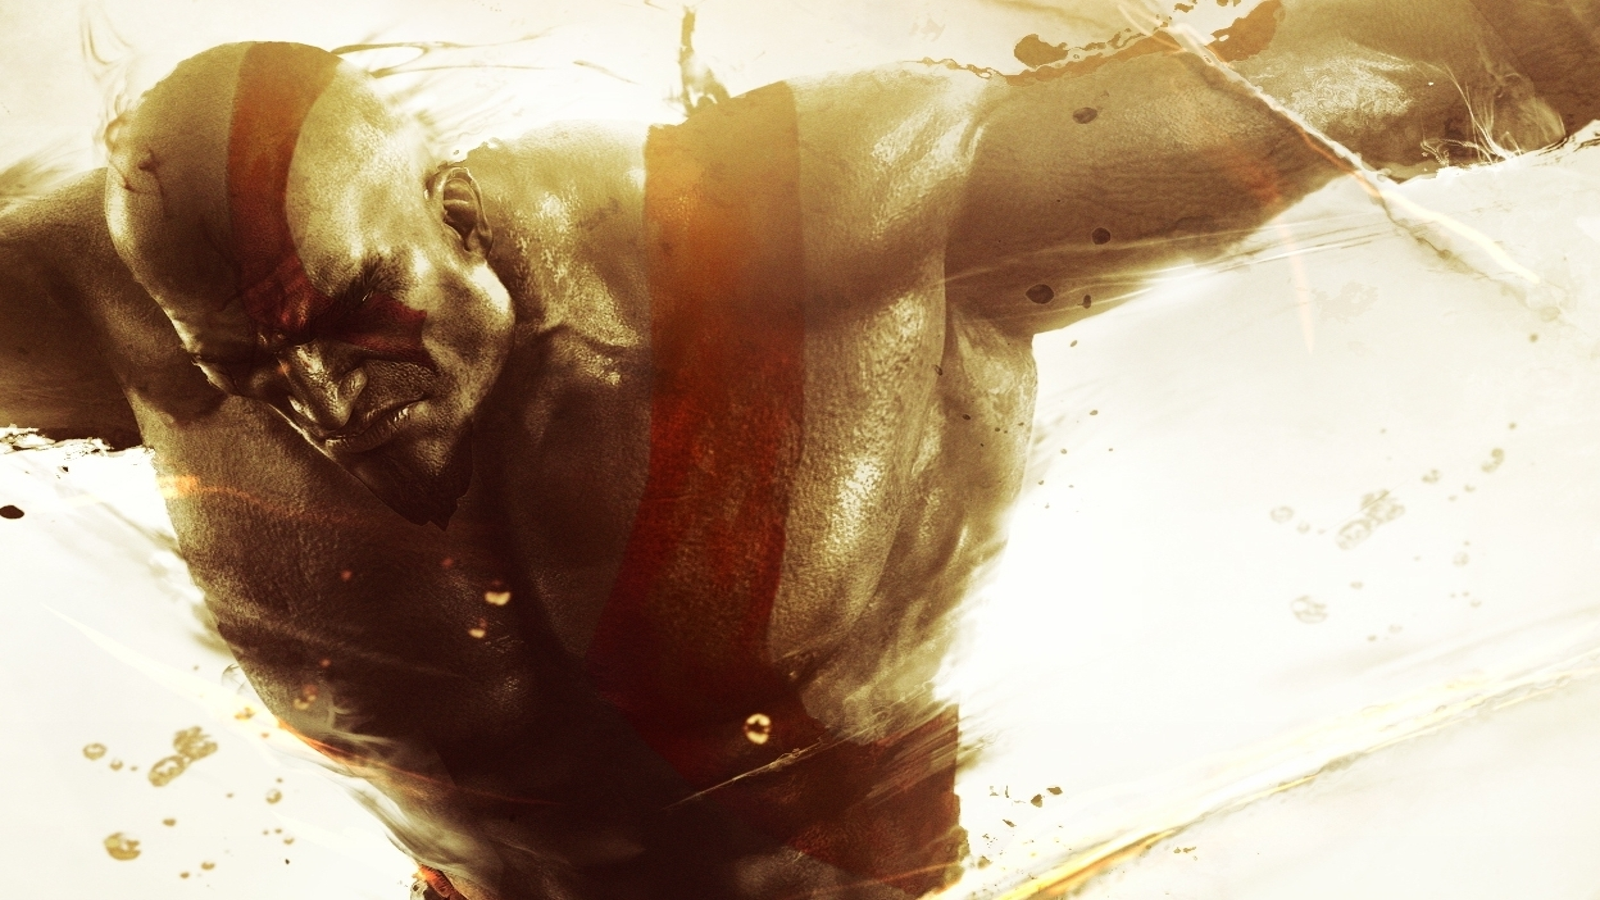 God of War: Ascension Rises Today, Final Multiplayer Allegiance Revealed –  PlayStation.Blog